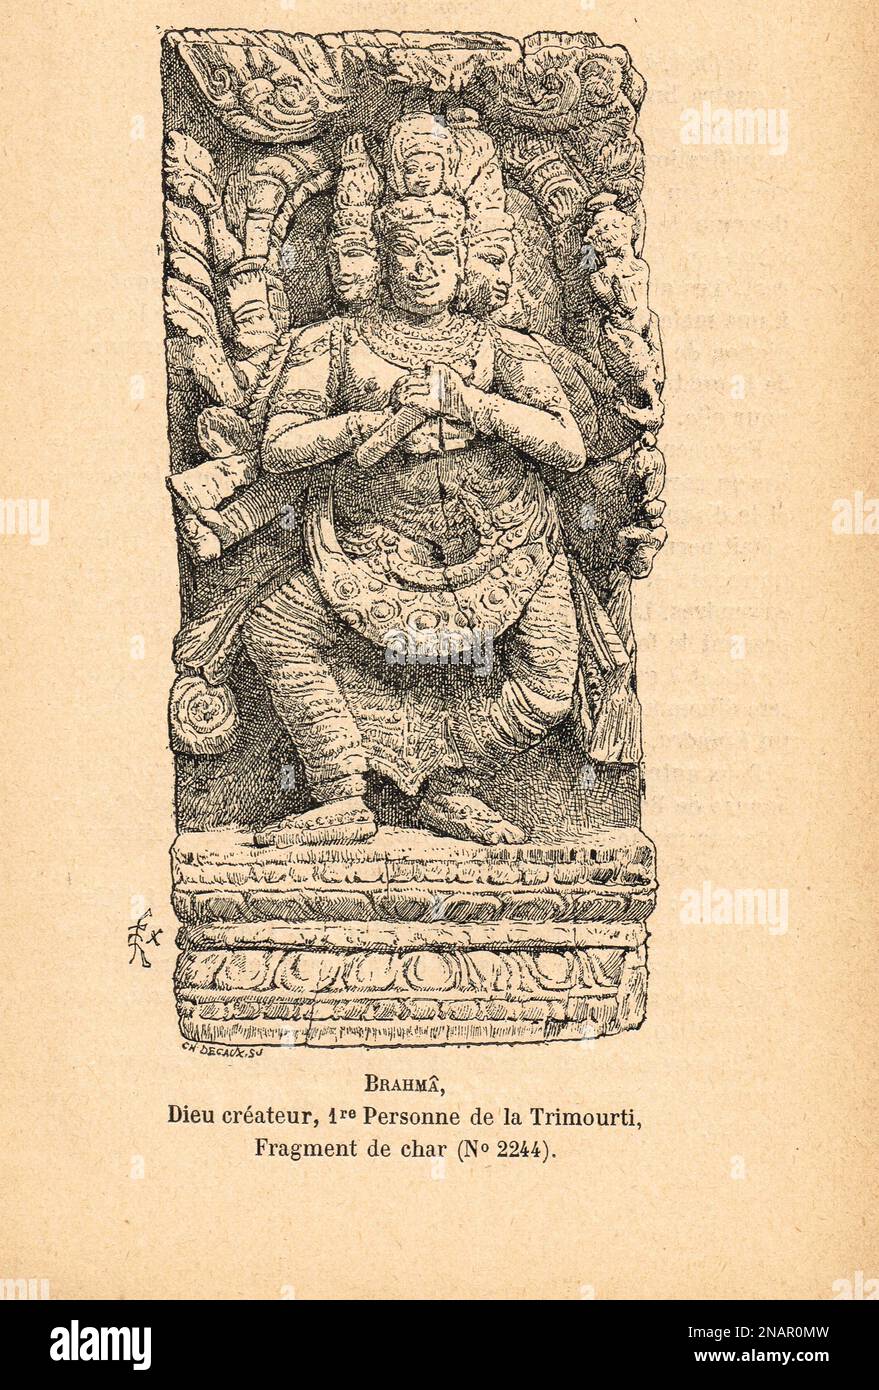 Brahma Hindu-gott, in Trimurti als „Schöpfer“ bezeichnet, verbunden mit Schöpfung, Wissen und den Vedas. Darstellung eines Streitwagen-Fragments aus dem 19. Jahrhundert, veröffentlicht 1894 Stockfoto